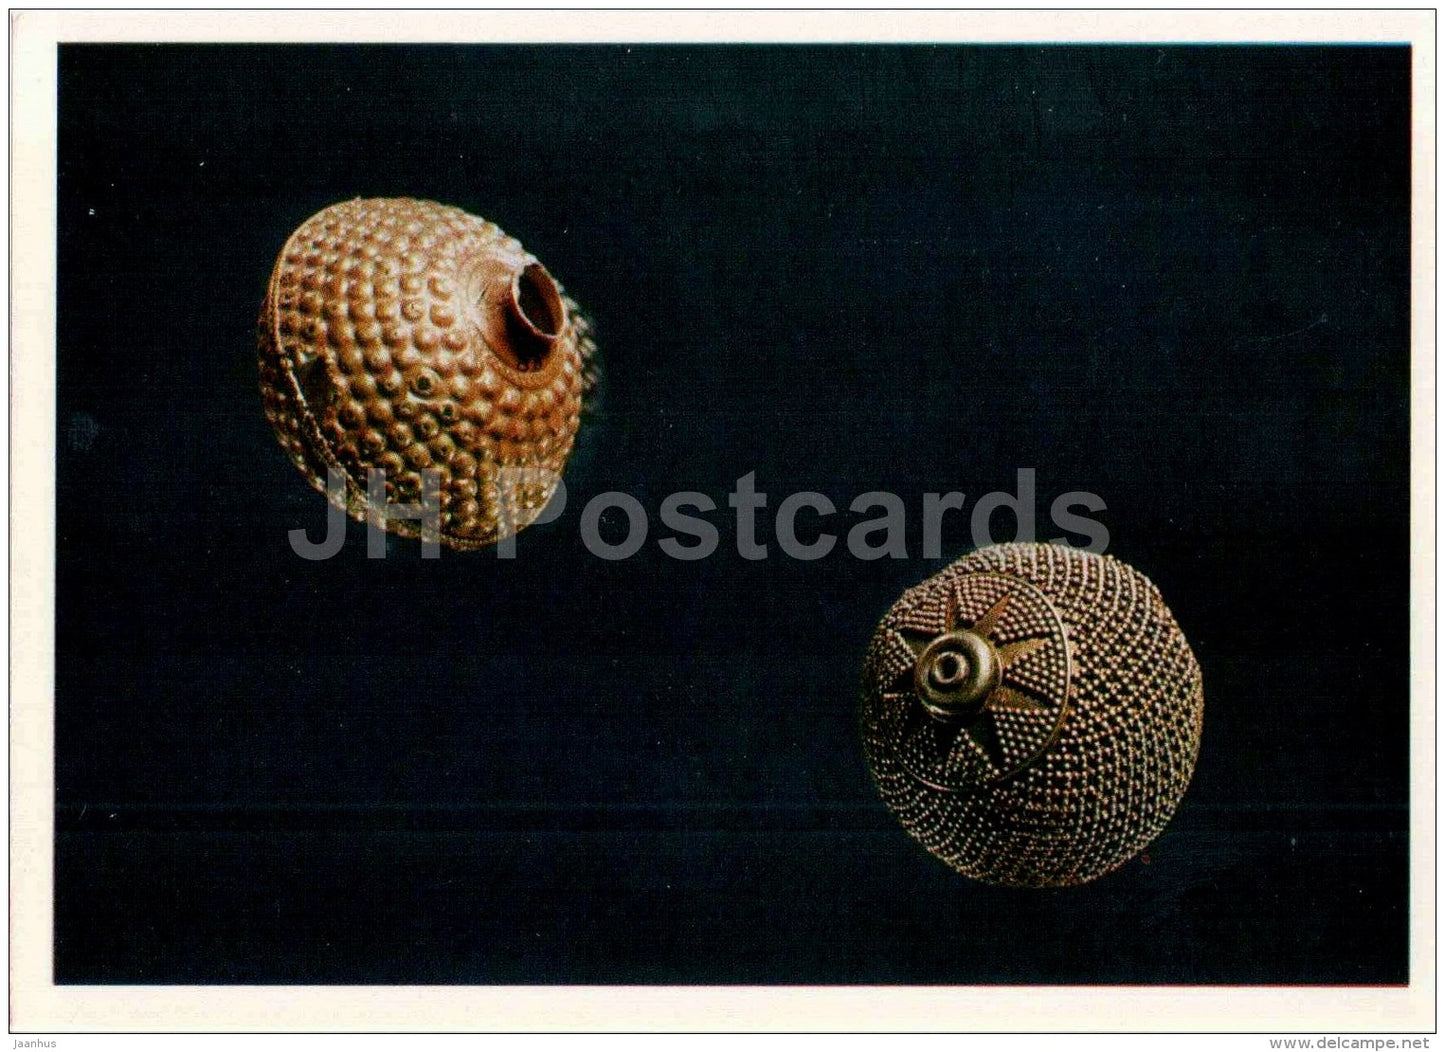 bead - Trialeti - Partskhanakanevi - archaeology - Ancient Jewellery Ornaments - 1978 - Russia USSR - unused - JH Postcards